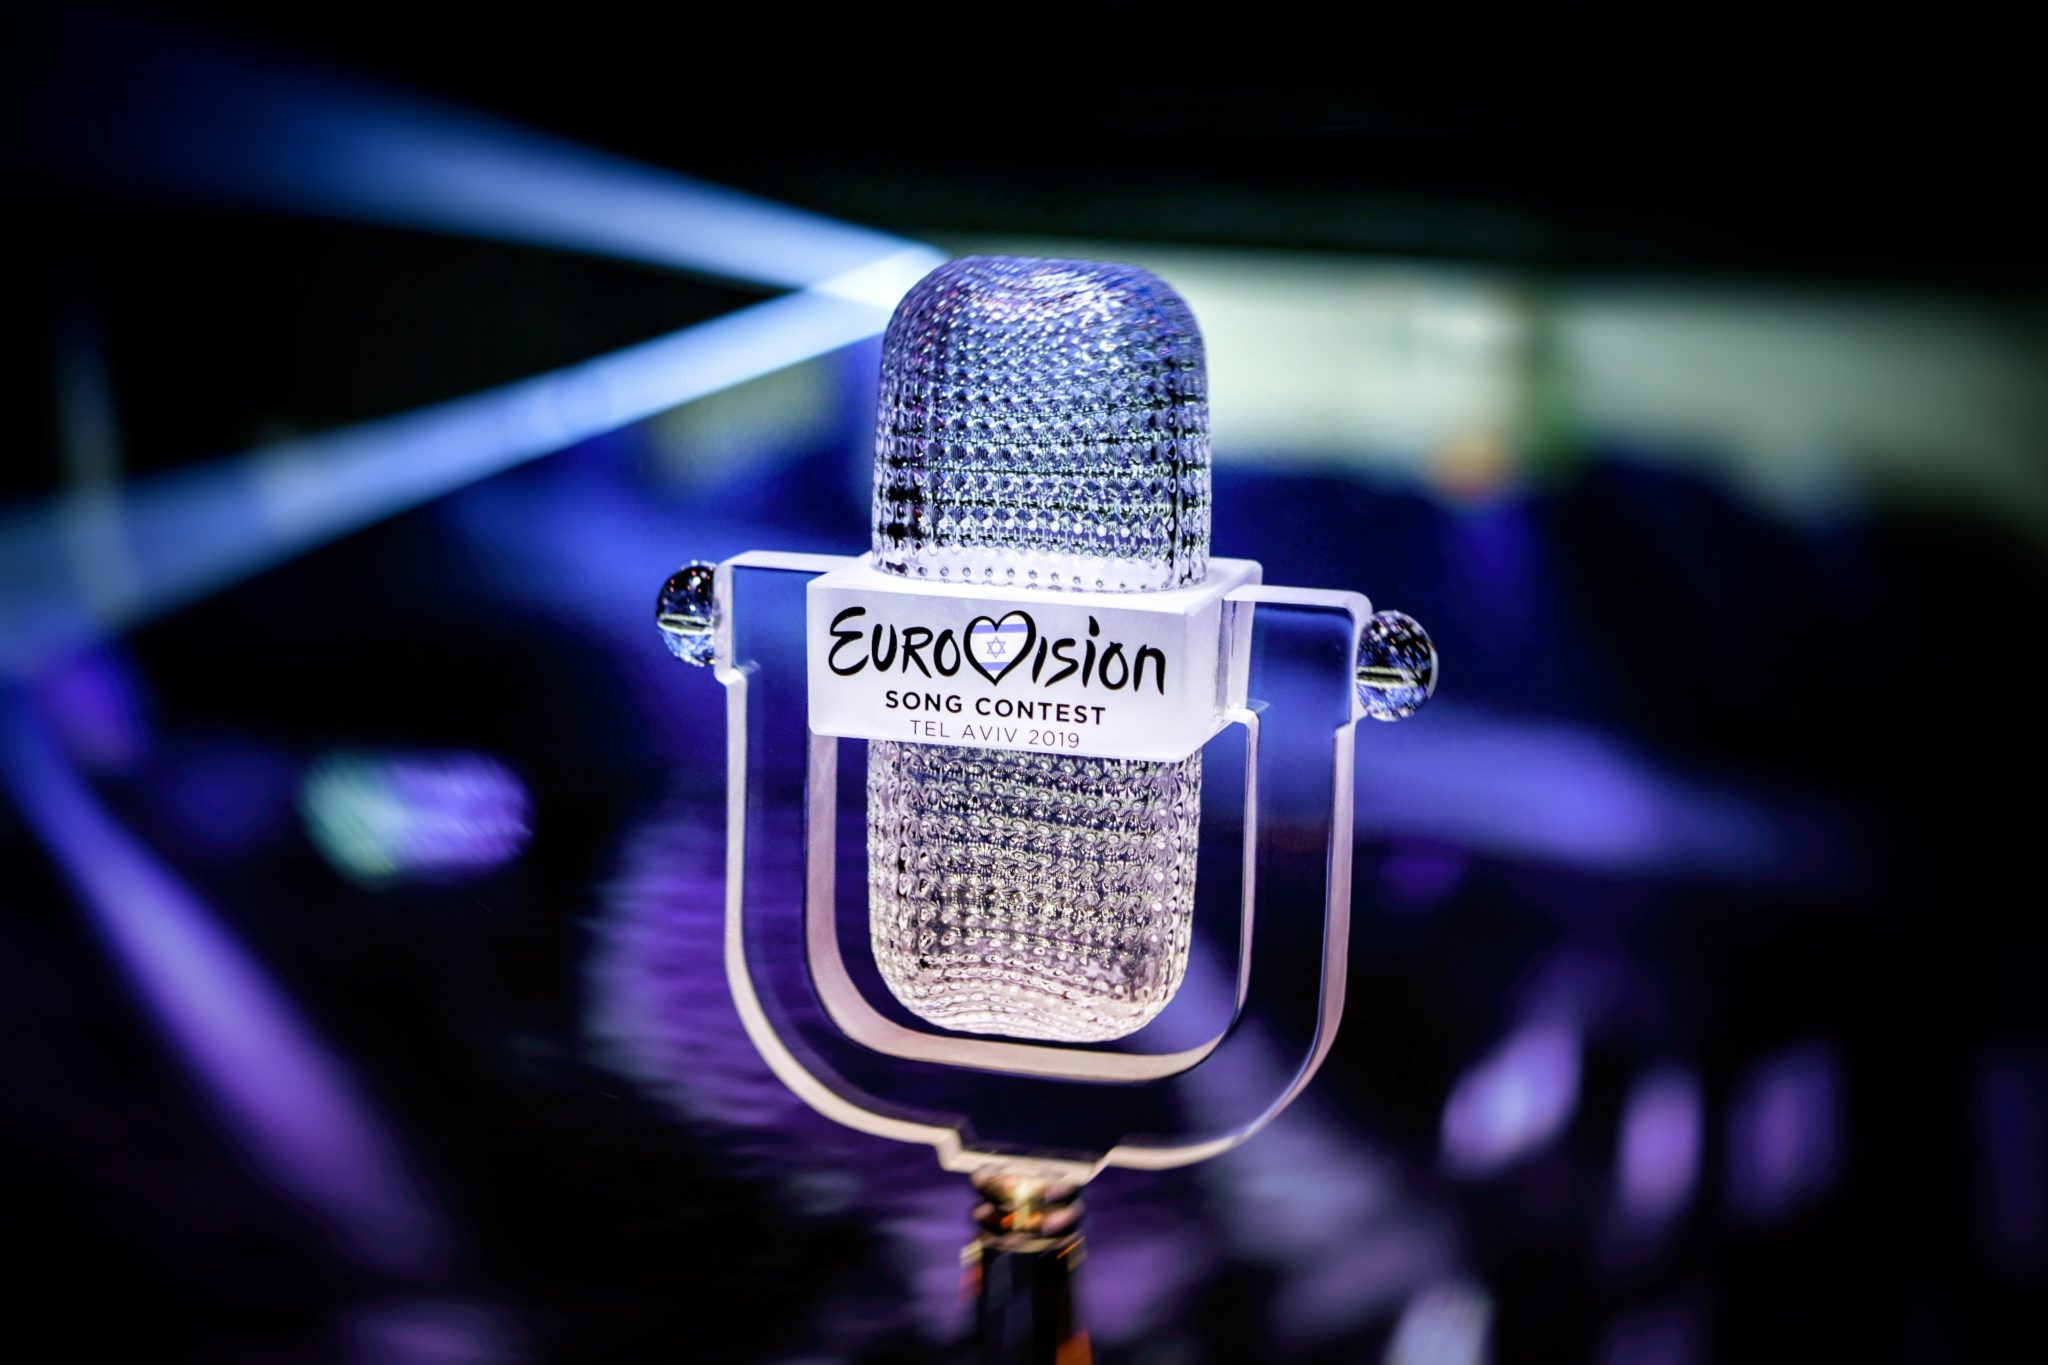 Télécharger des fonds d'écran Eurovision HD